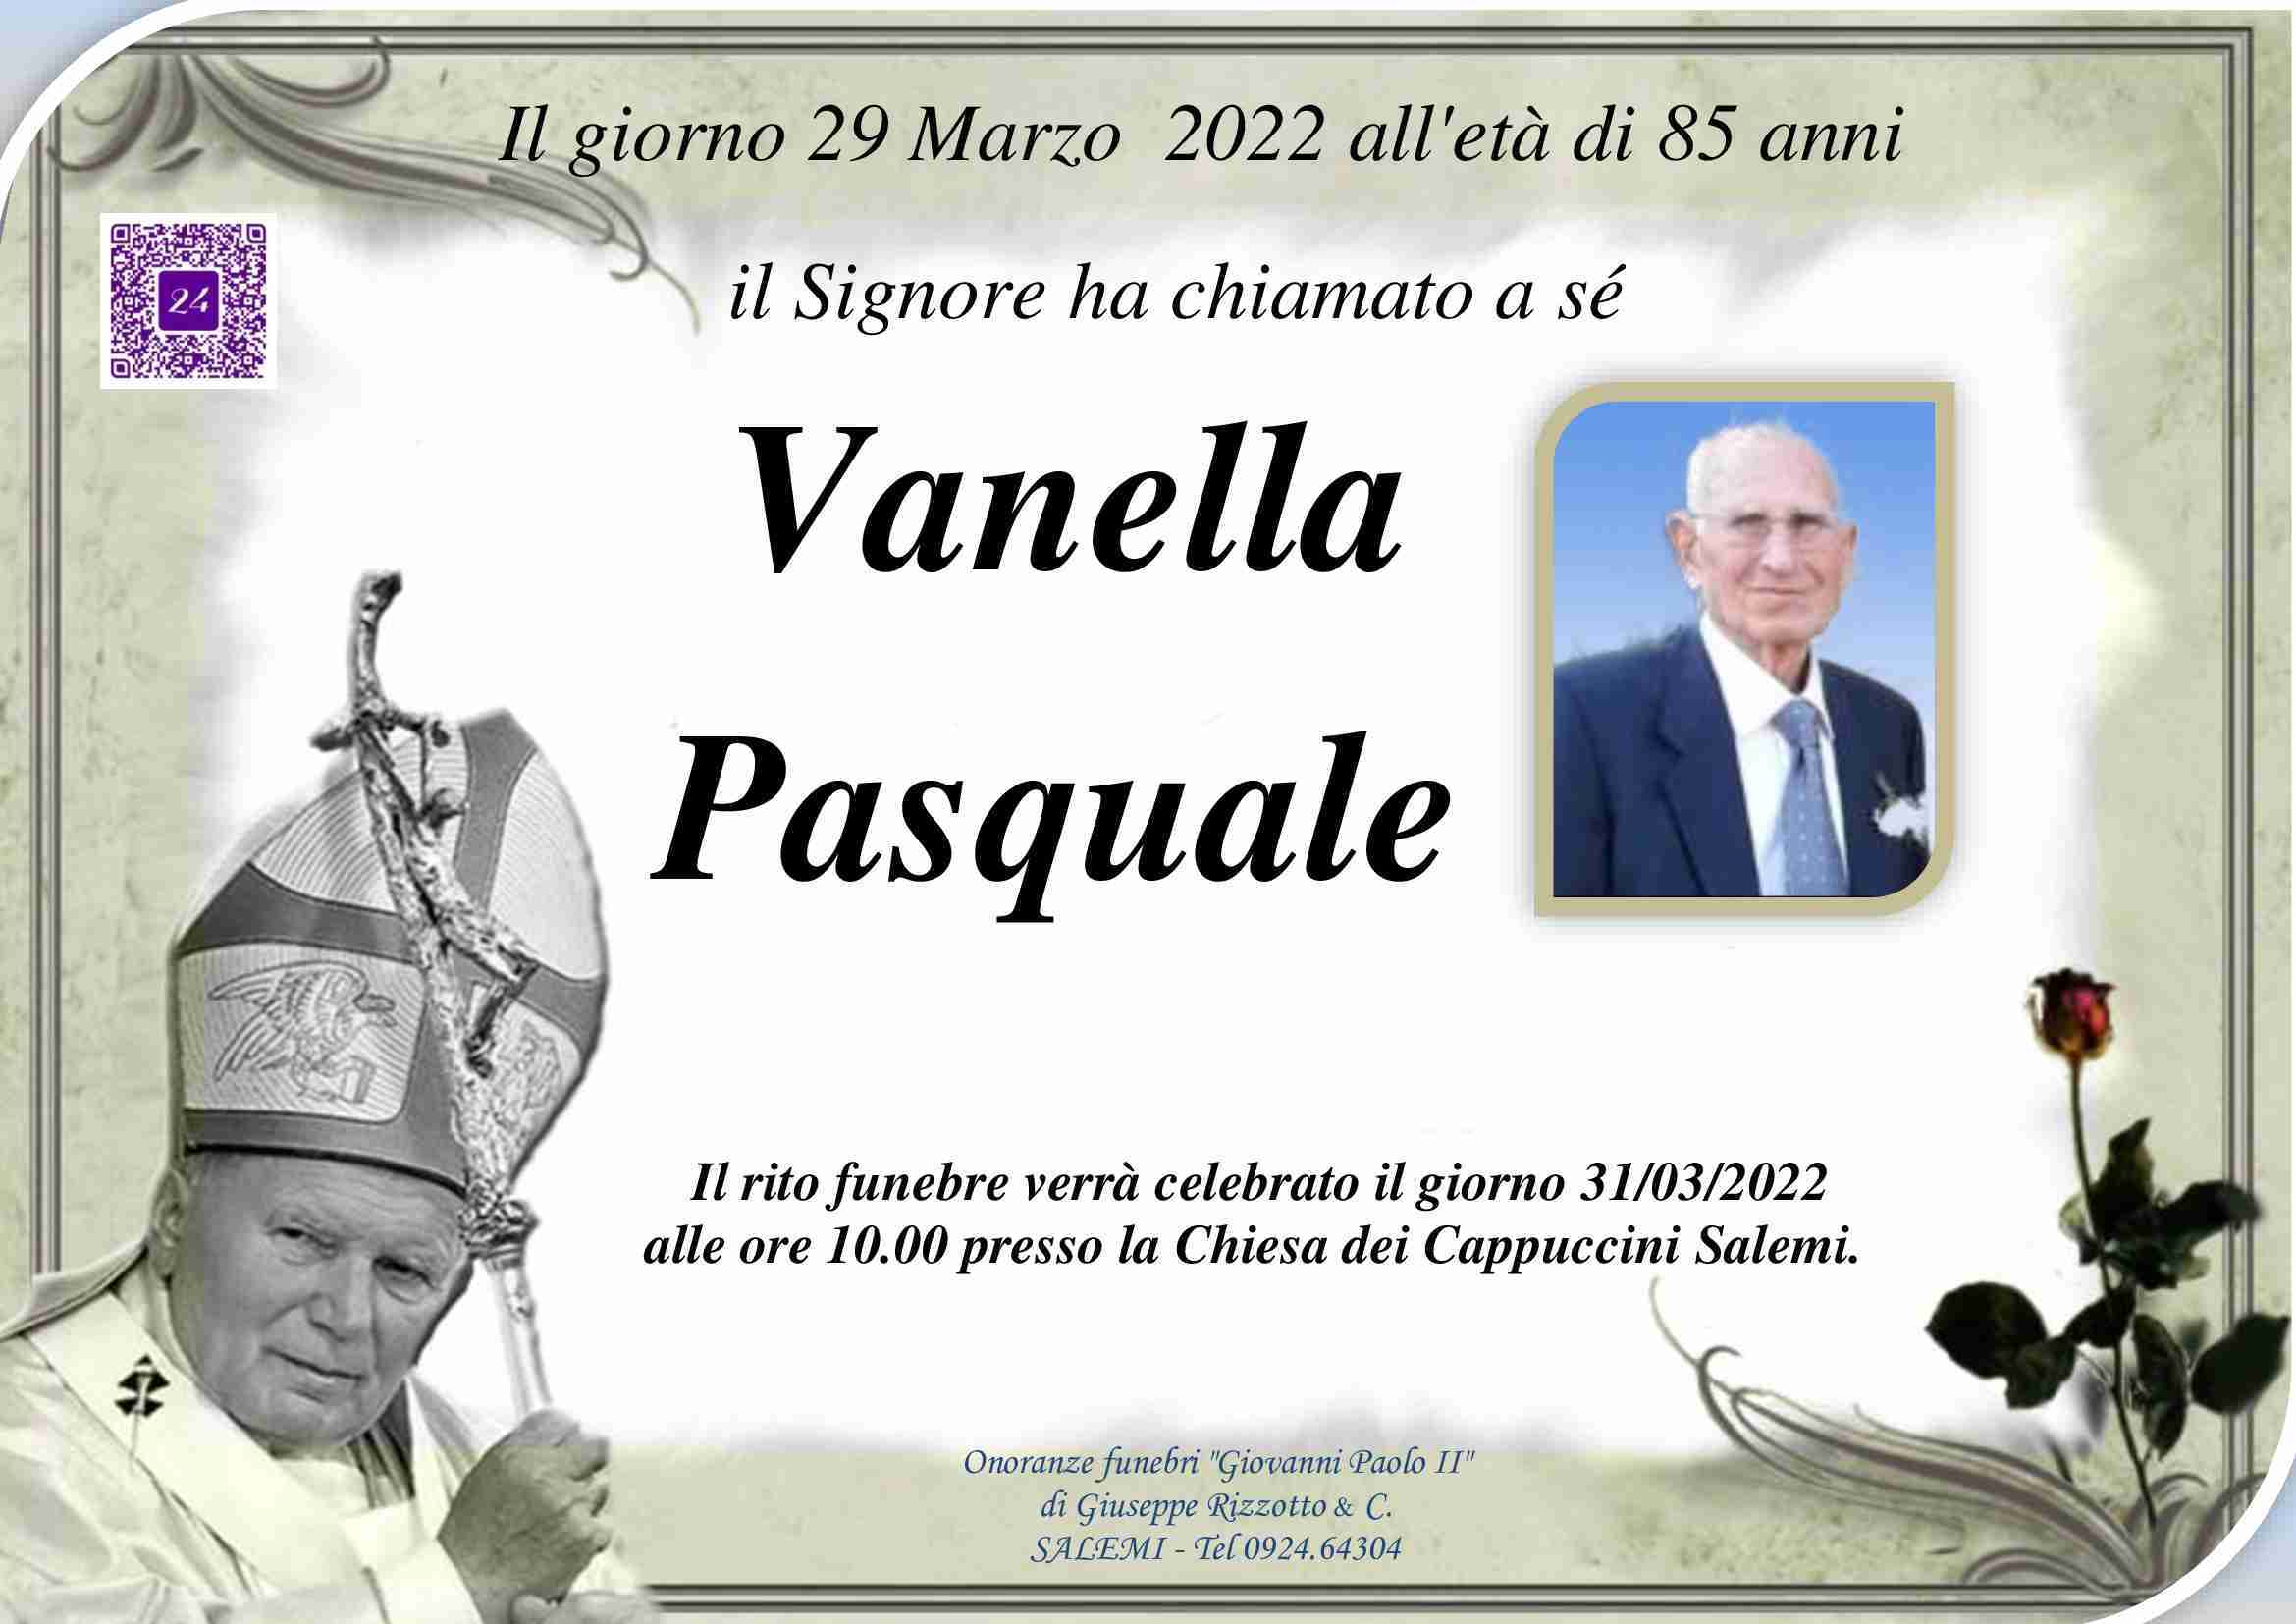 Pasquale Vanella